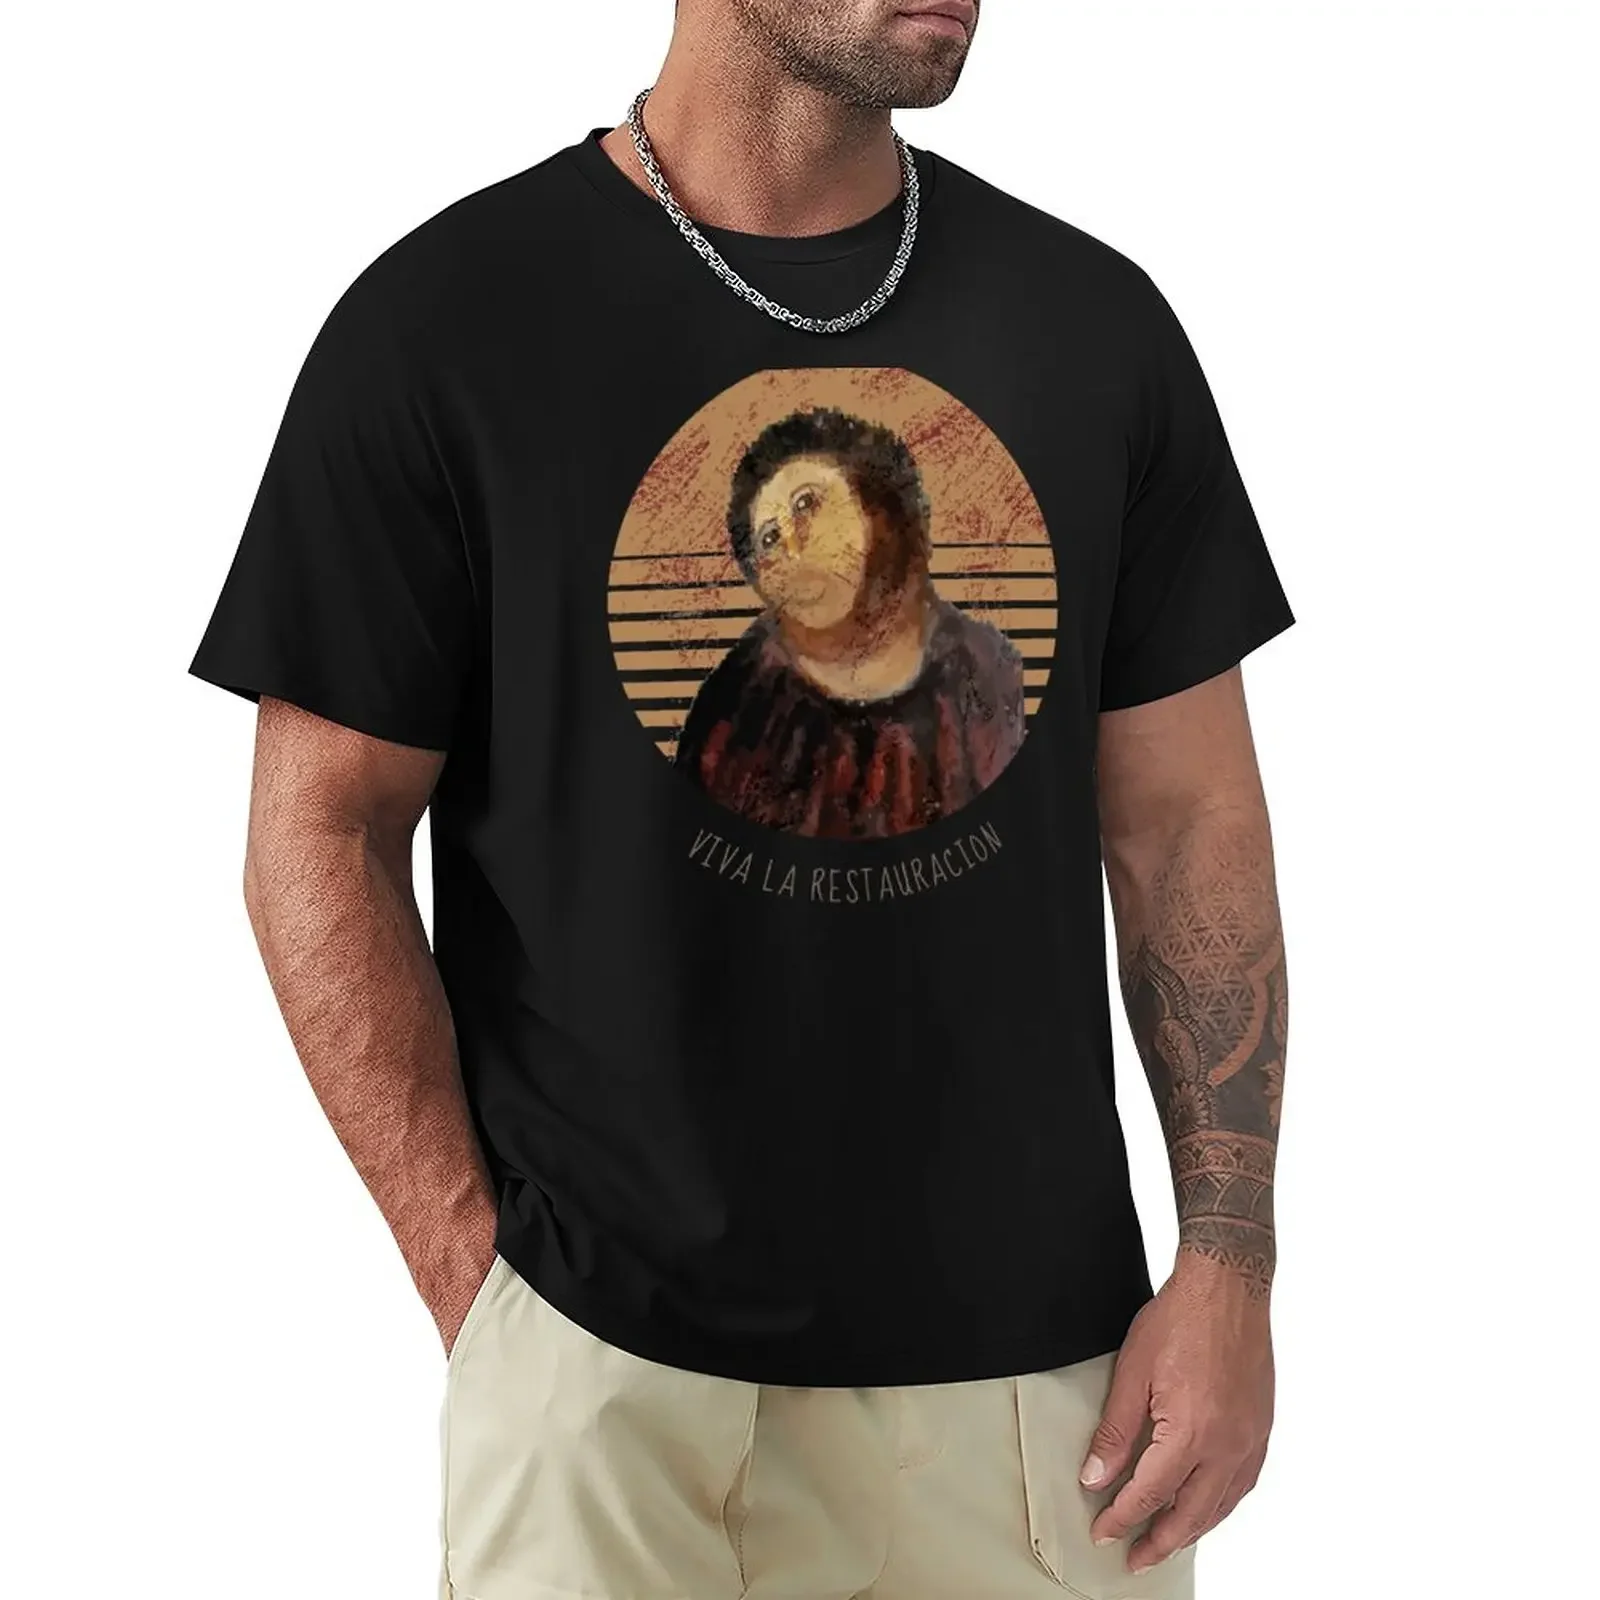 

Футболка Viva La ресторанная с изображением Иисуса фрески, восстановленного неудачного мема, черная футболка с изображением s, футболка для мужчин